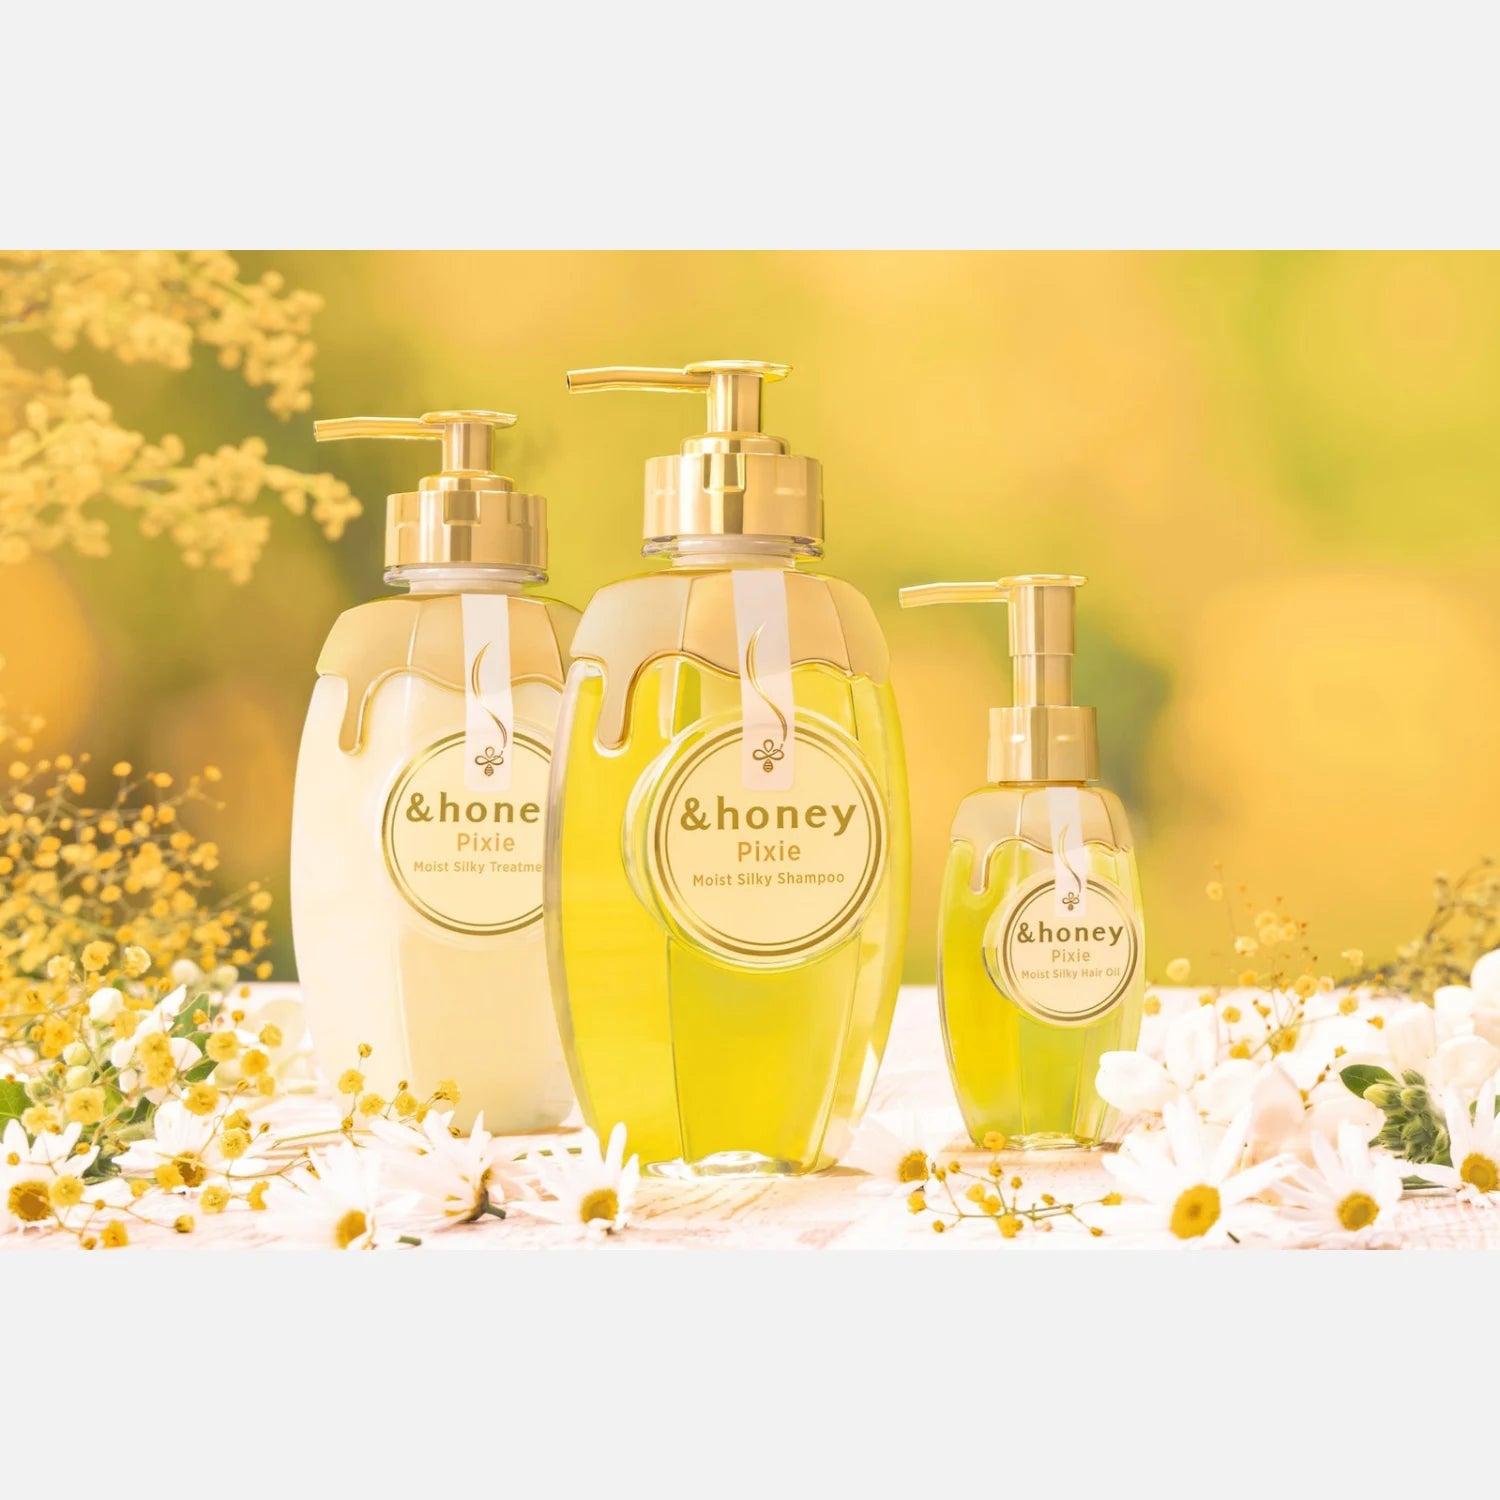 & Honey Pixie Moist Silky Shampoo, Treatment & Hair Oil Set 440ml Each + 100ml - Buy Me Japan